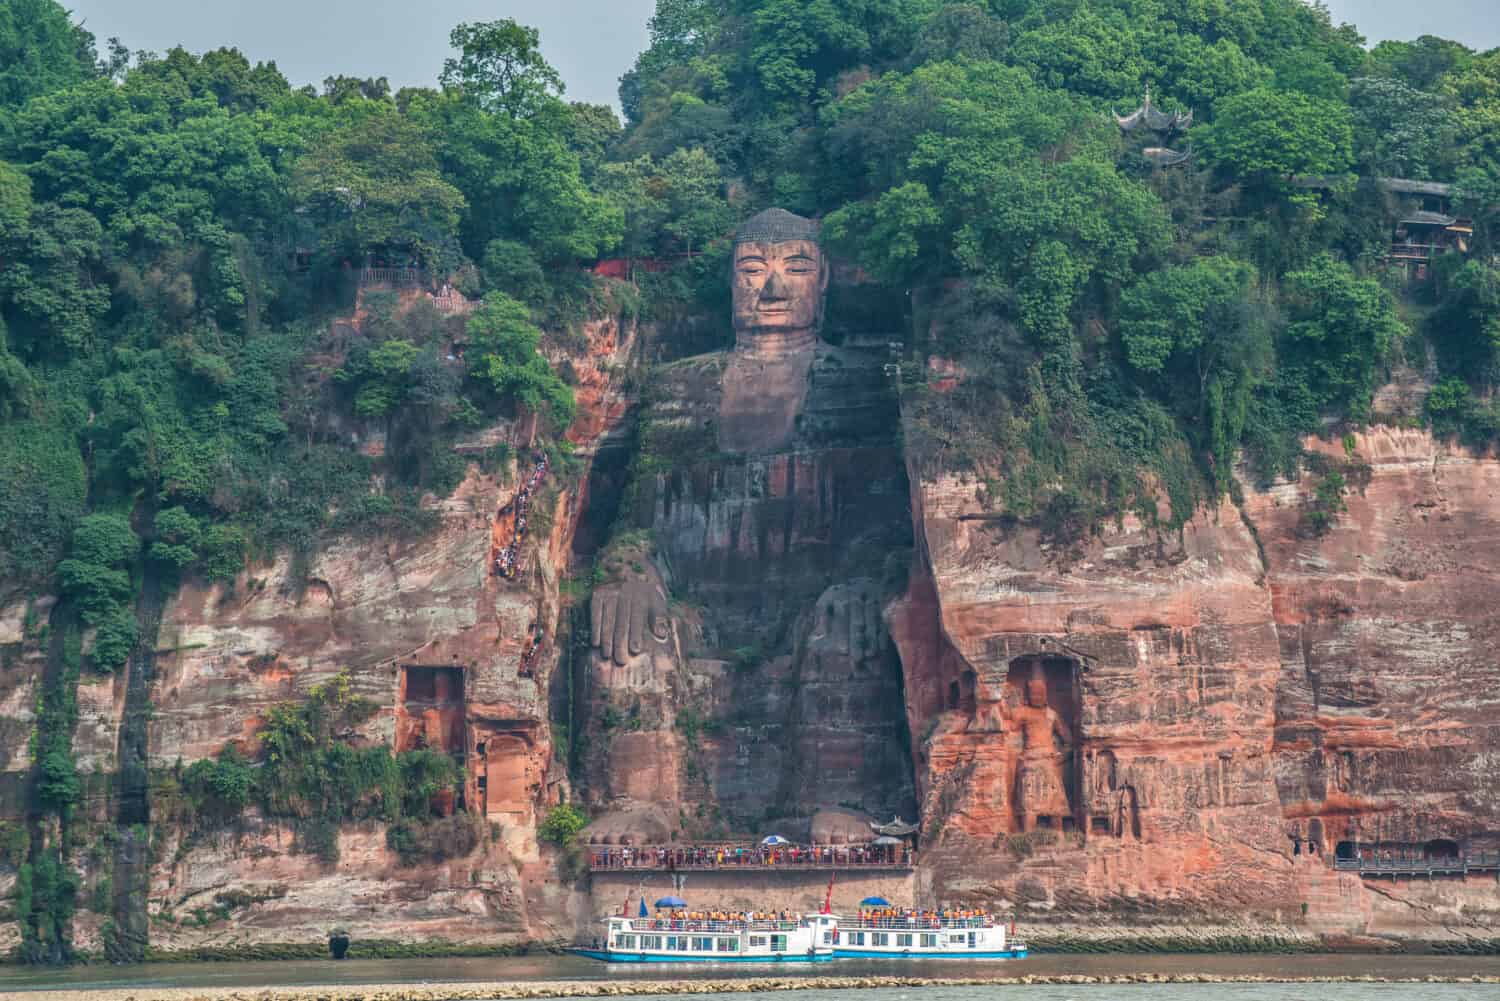 The Leshan Giant Buddha